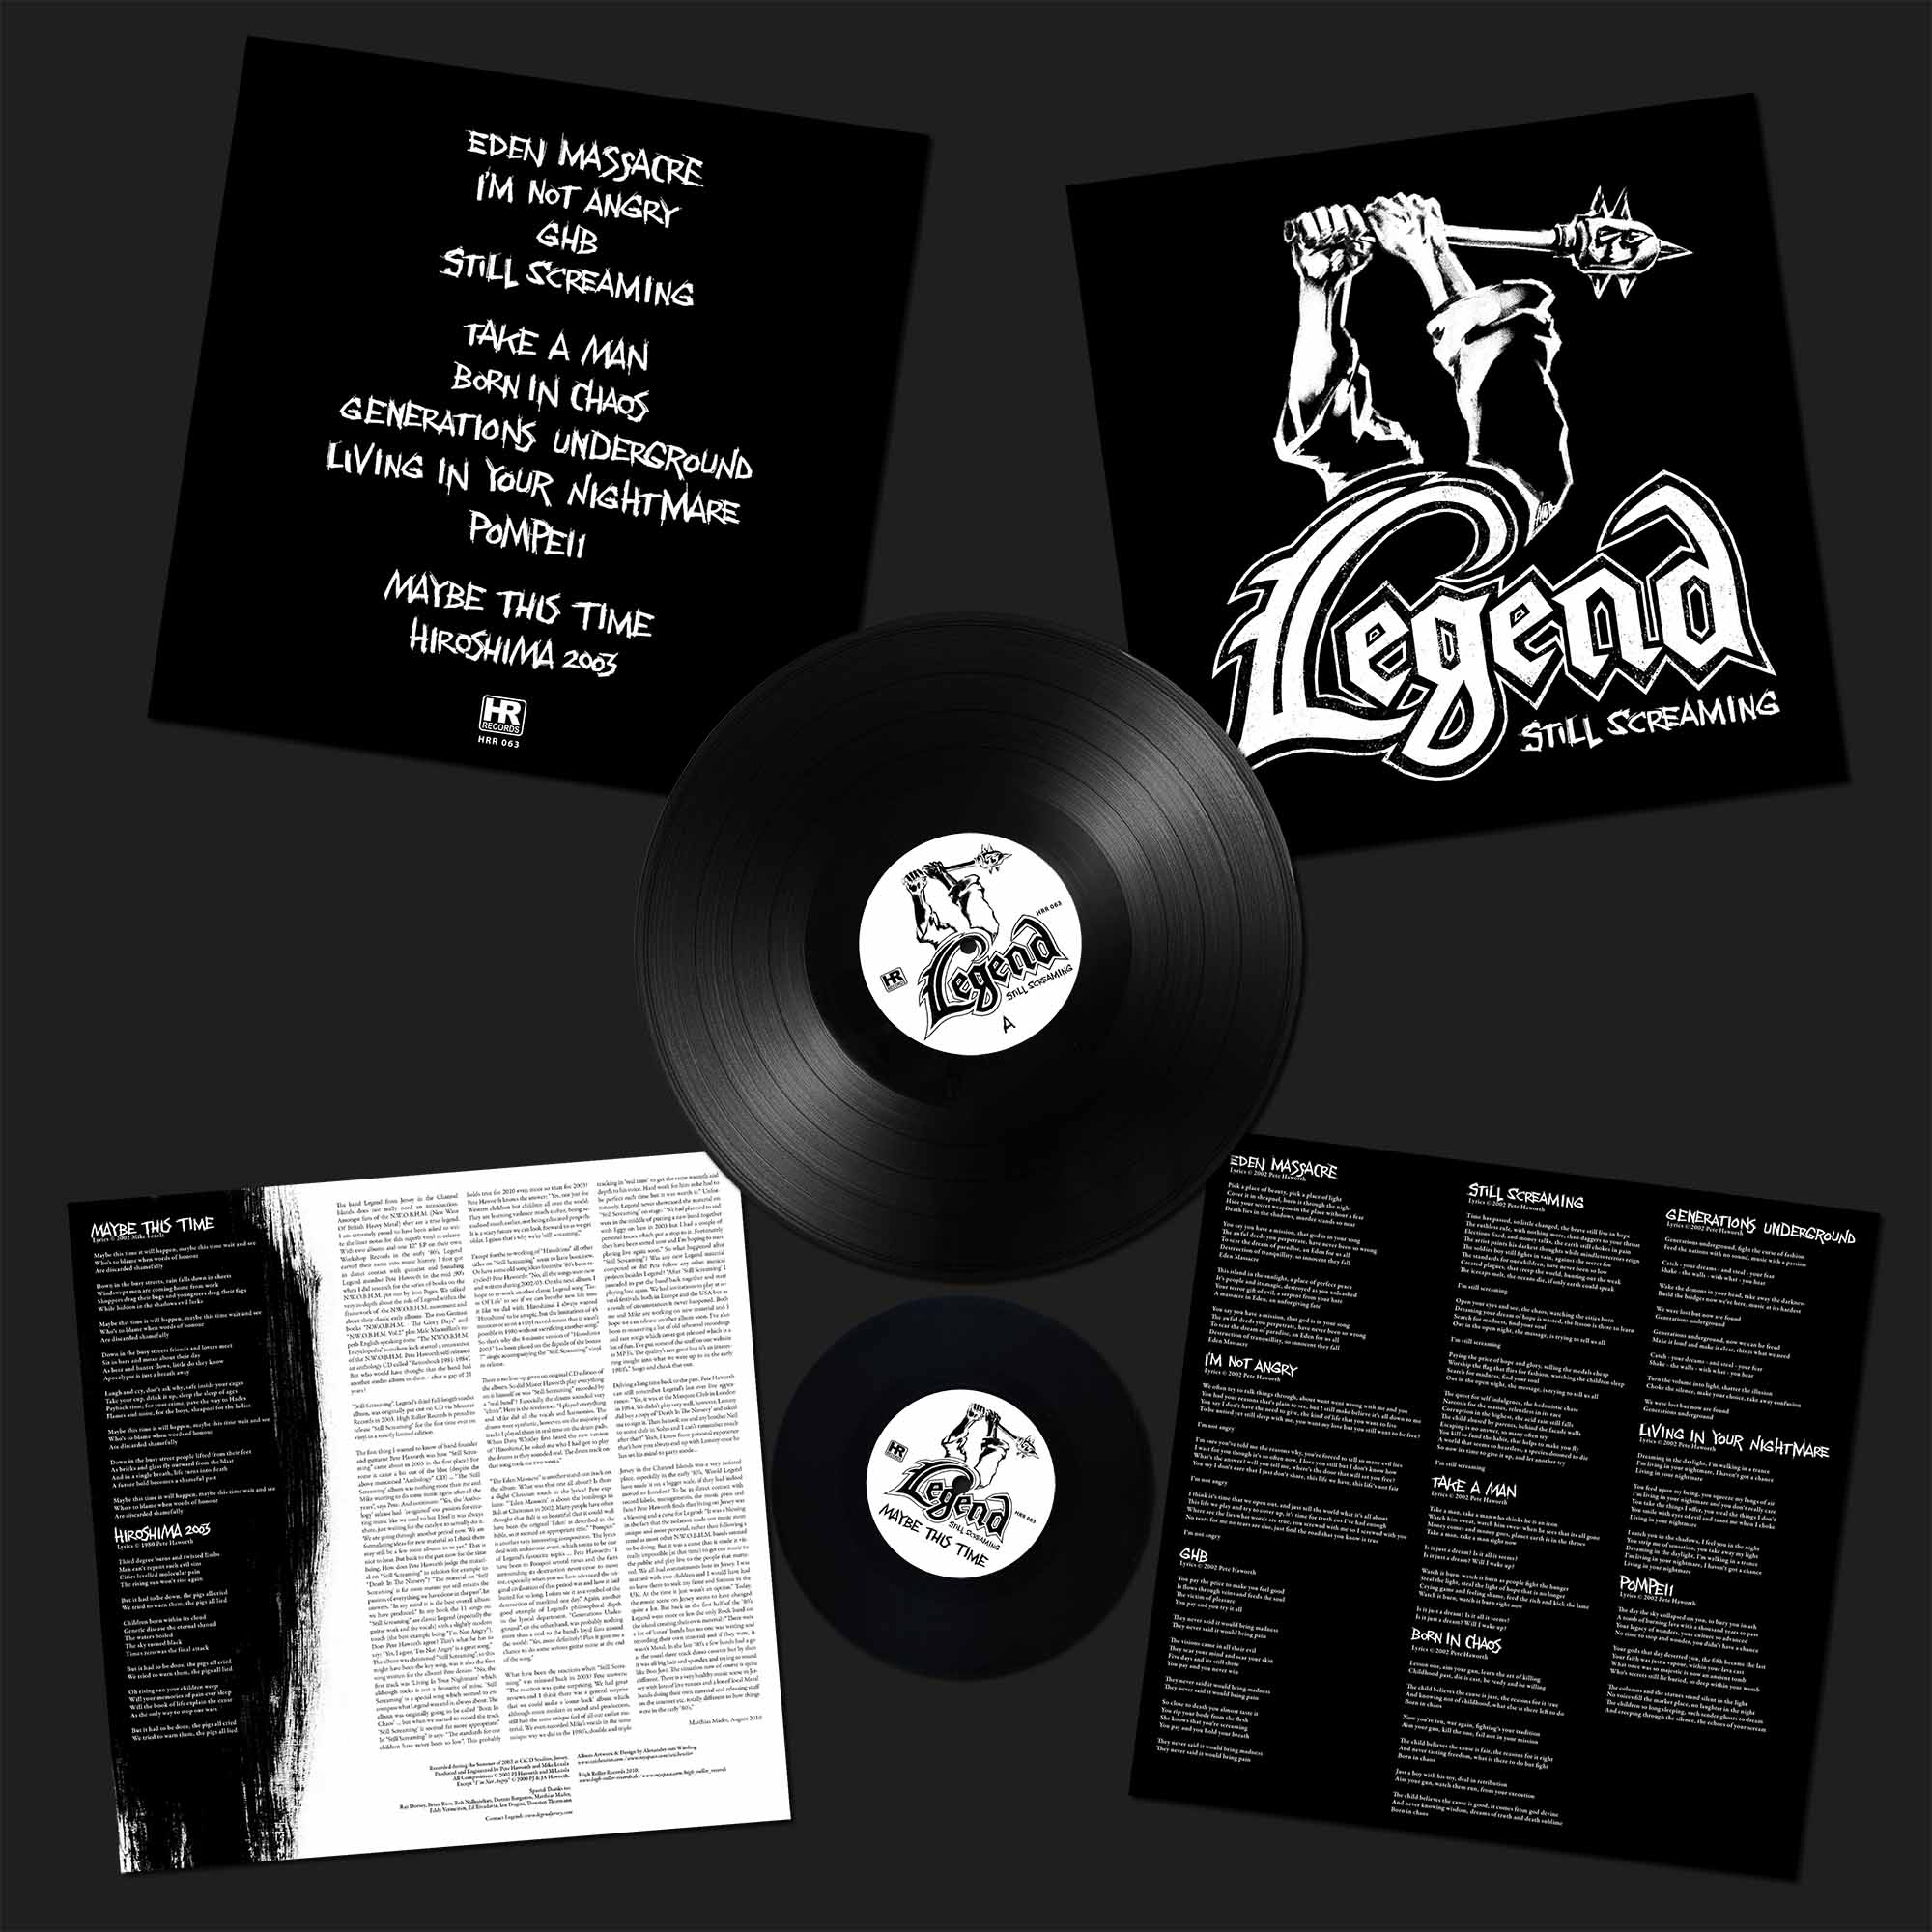 LEGEND - Still Screaming  LP